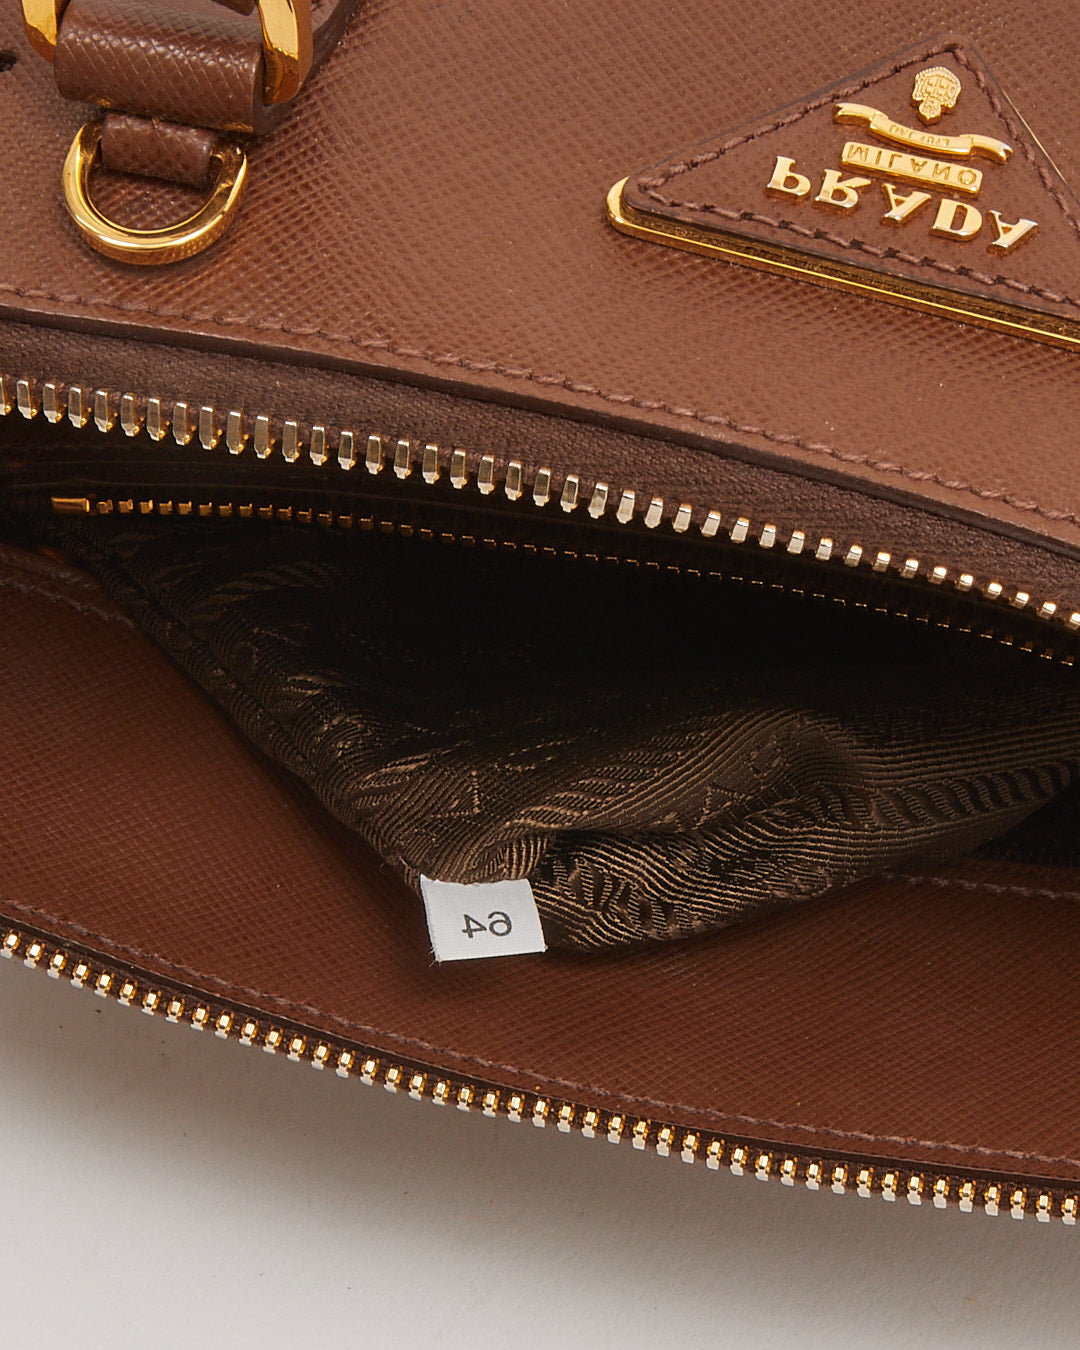 Prada Brown Saffiano Promenade Medium Lux Bag